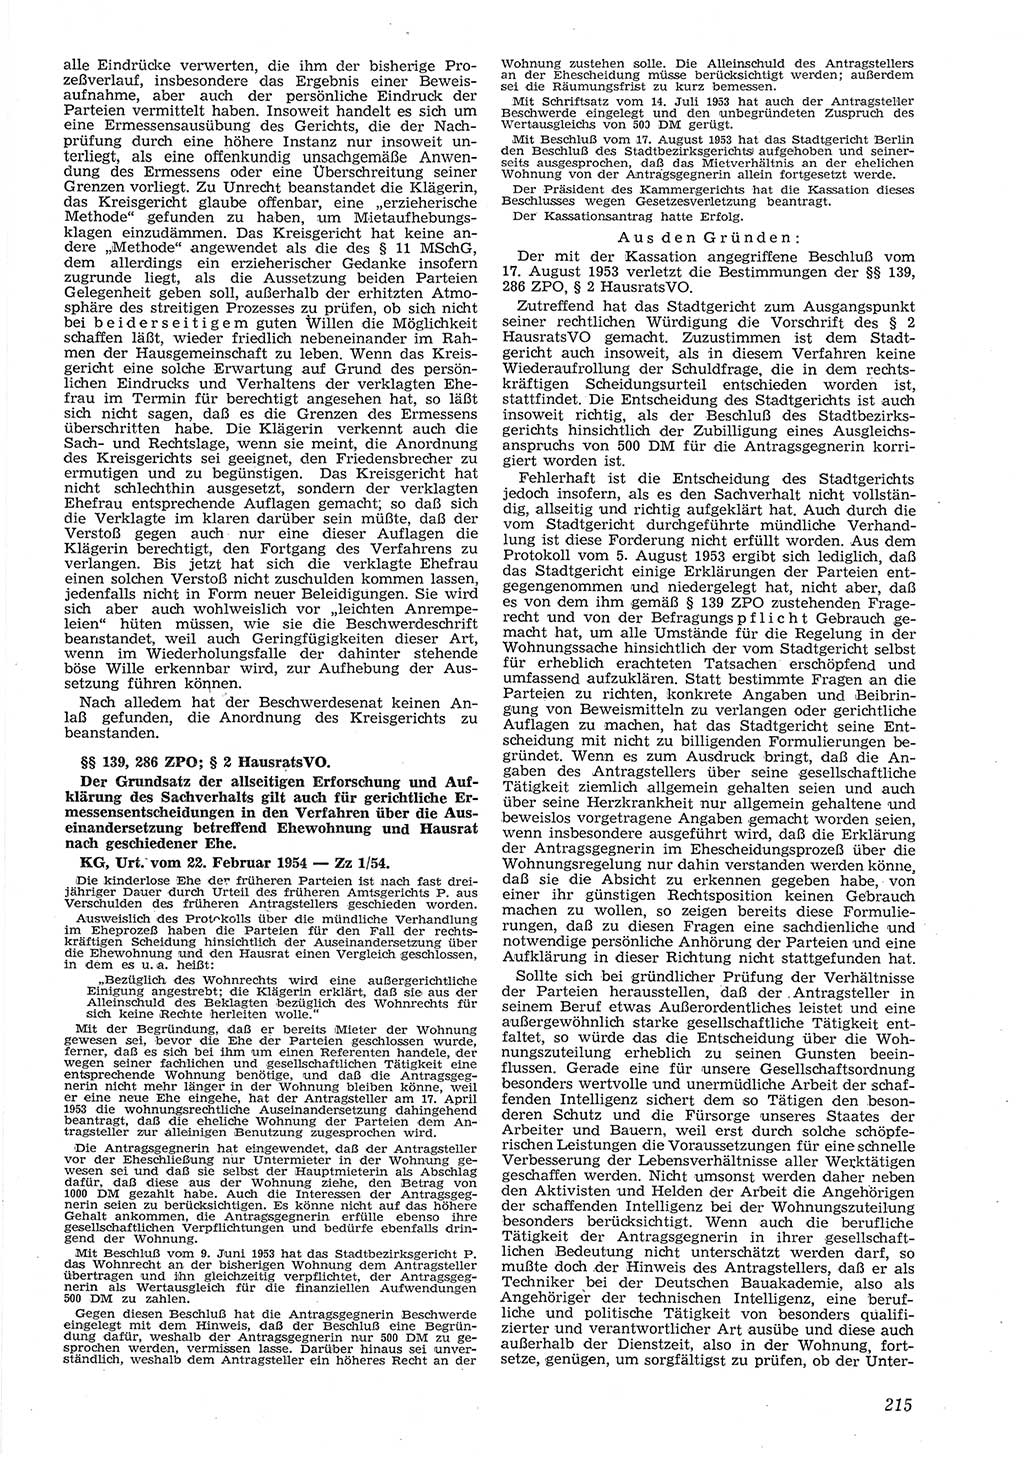 Neue Justiz (NJ), Zeitschrift für Recht und Rechtswissenschaft [Deutsche Demokratische Republik (DDR)], 8. Jahrgang 1954, Seite 215 (NJ DDR 1954, S. 215)